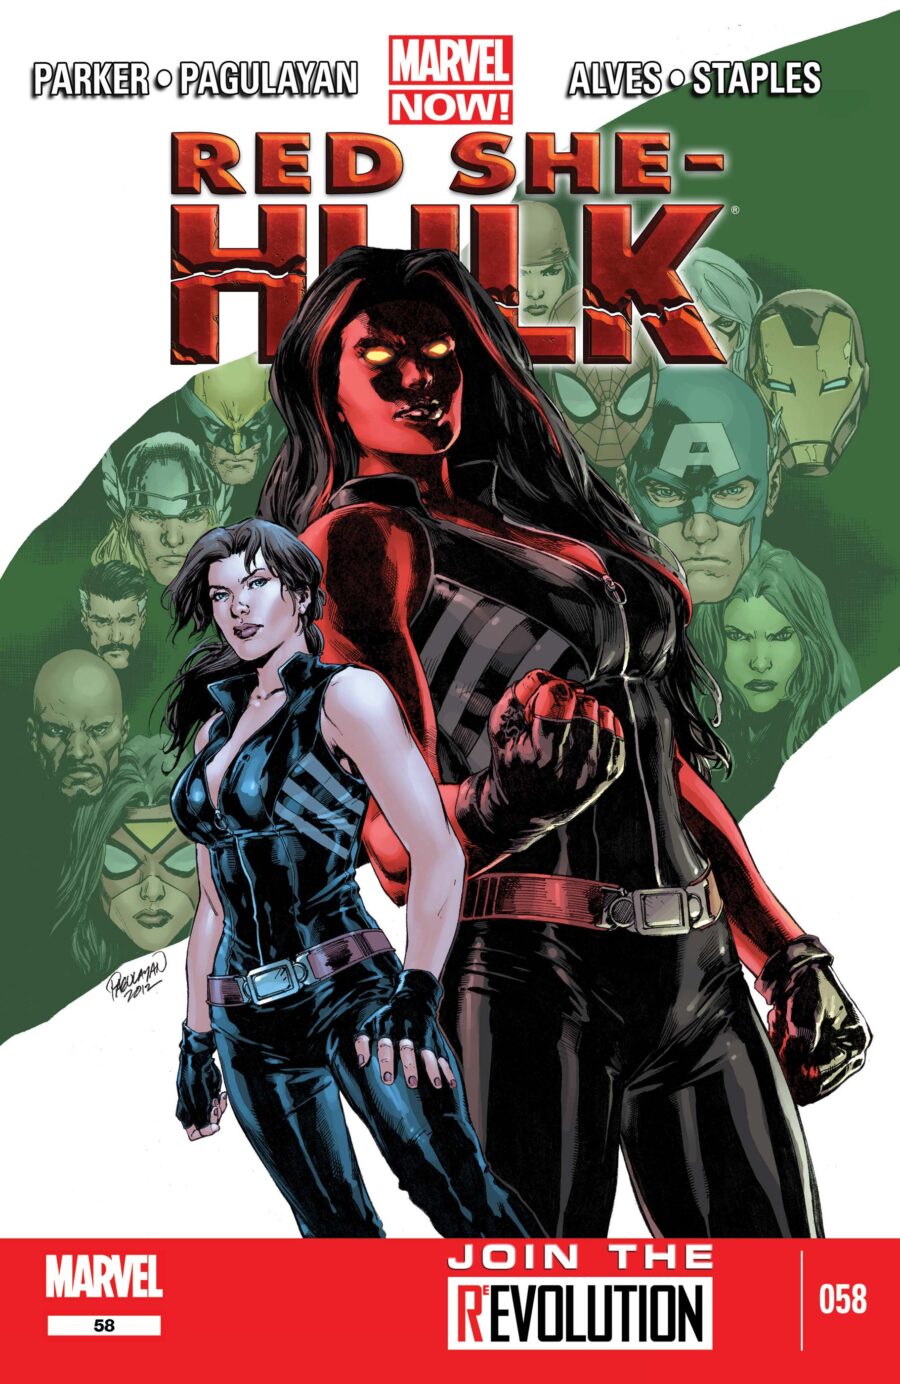 red she-hulk